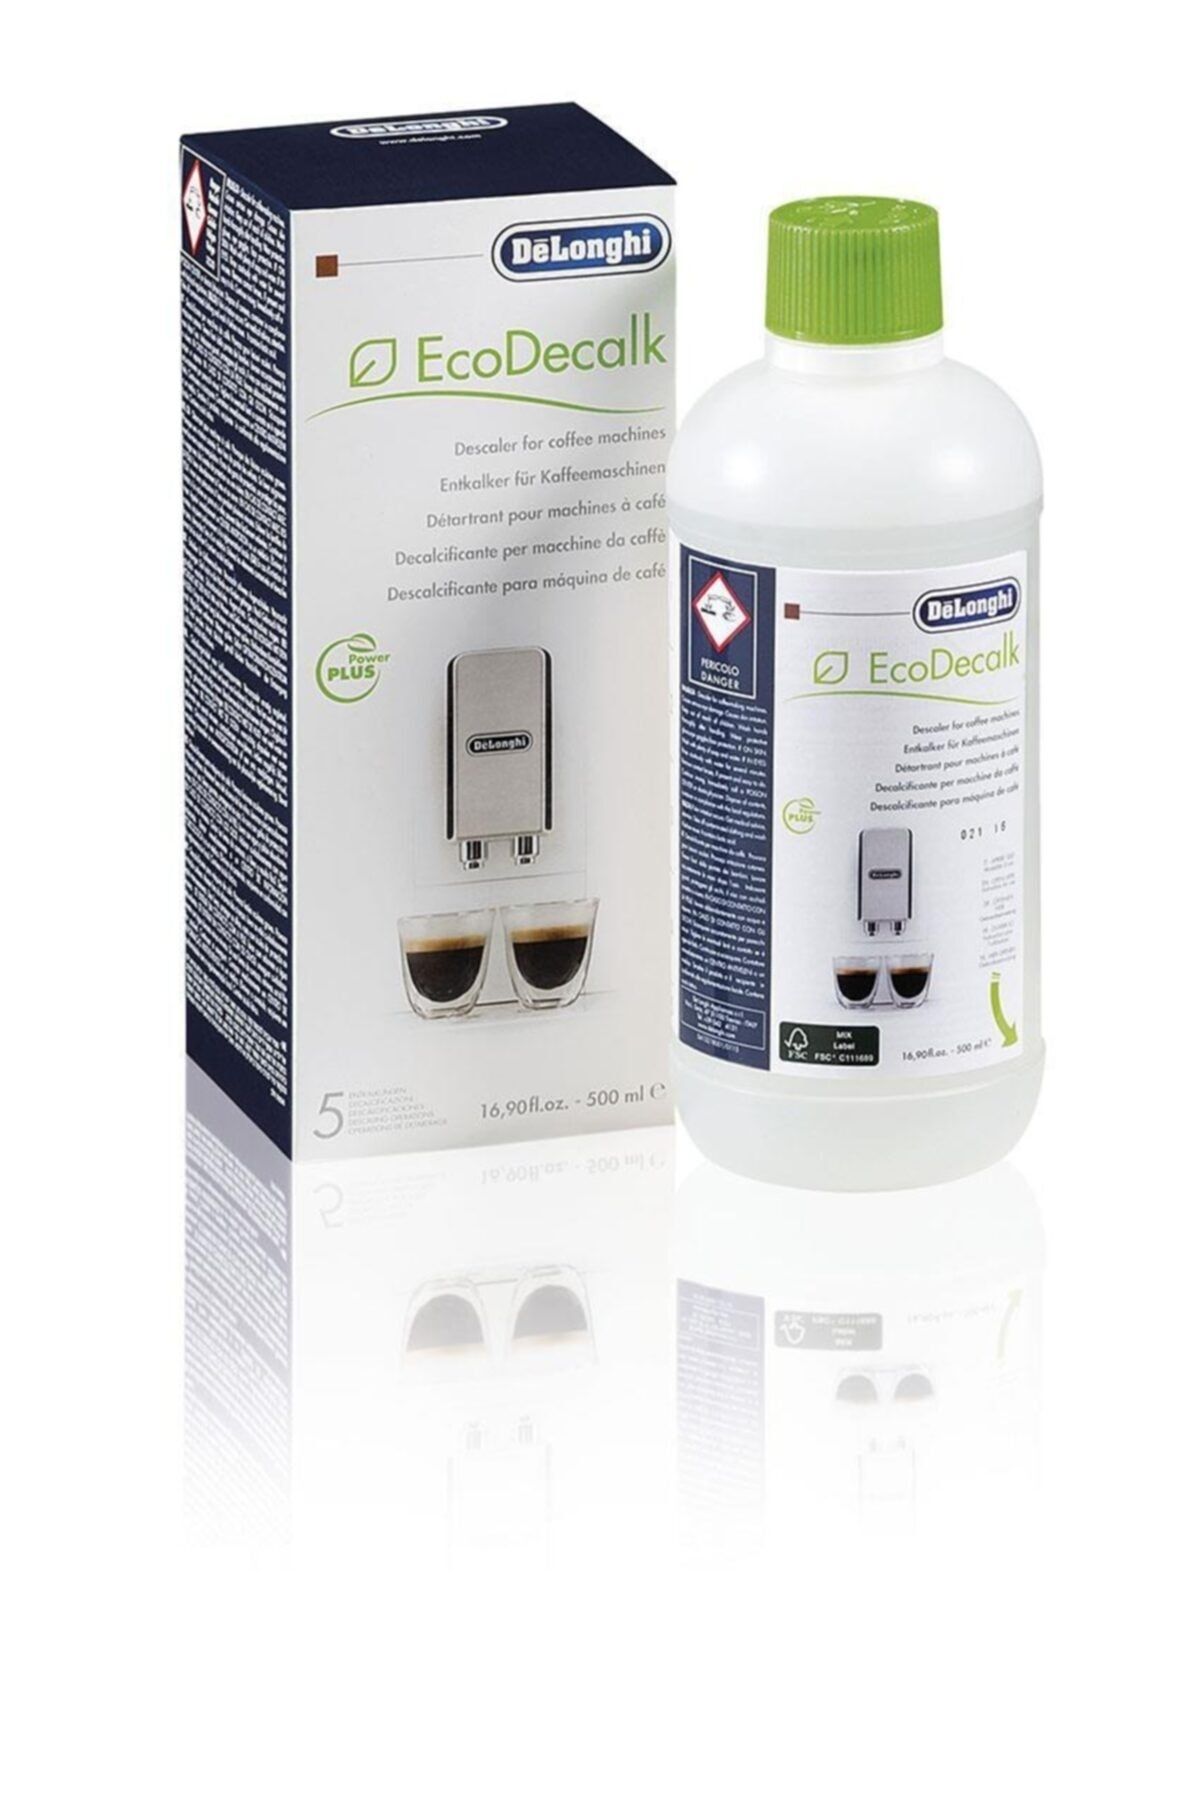 Delonghi Ecodecalk Delongi Kahve Makinesi Temizleme Solüsyonu Delonghı